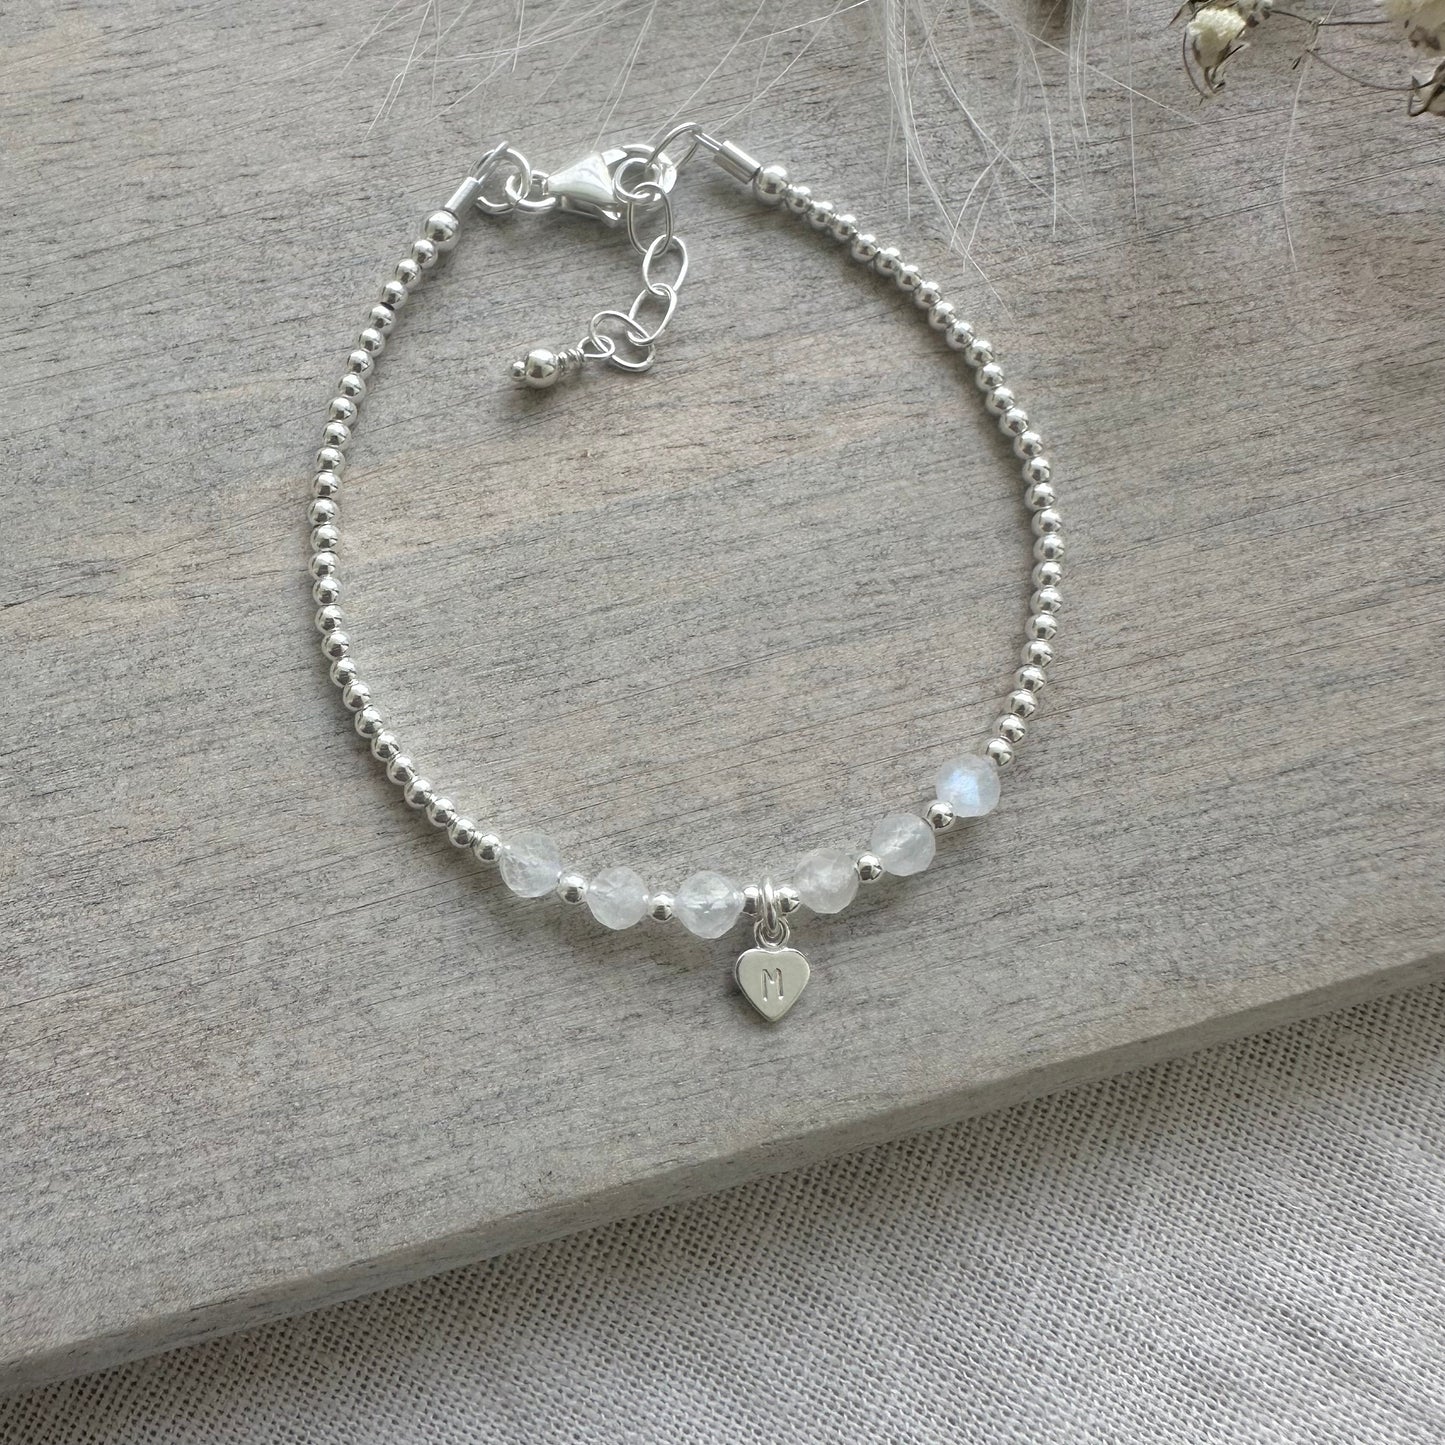 Personalised Moonstone Bracelet, , Dainty June Birthstone Jewellery in Sterling Silver